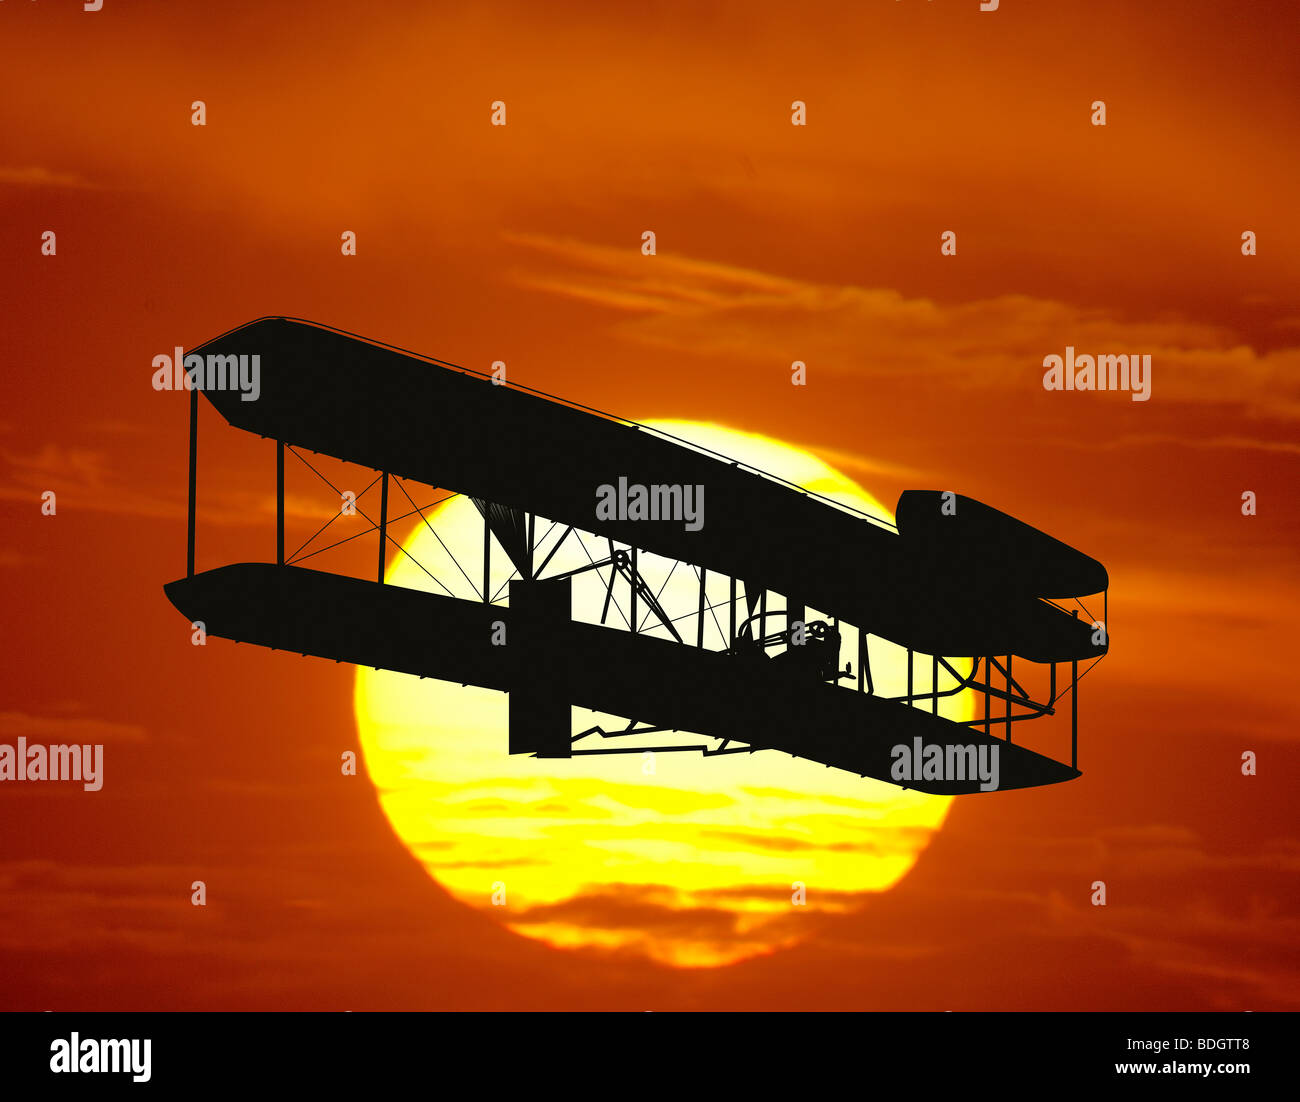 Réplique d'un composite de l'avion des frères Wright sur le coucher du soleil Banque D'Images